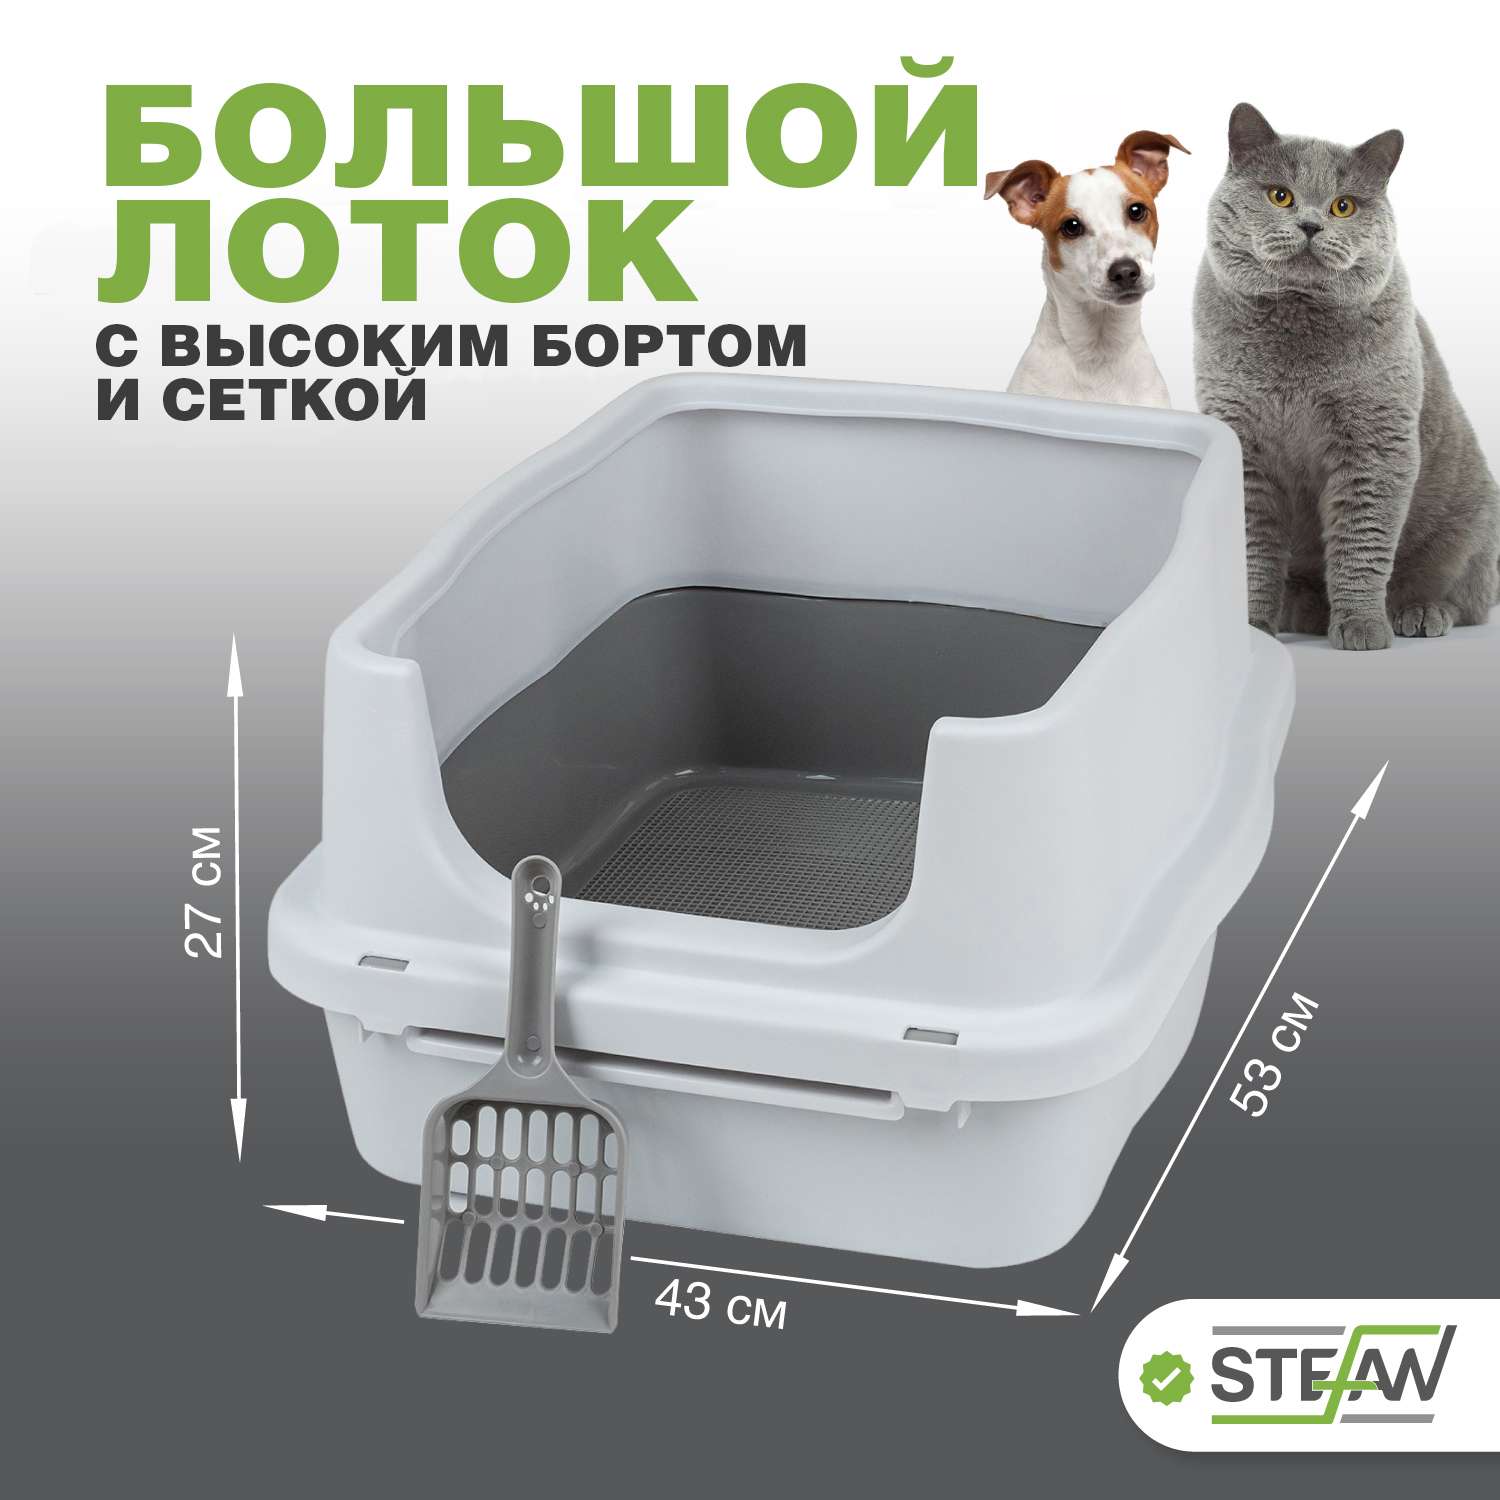 Туалет-лоток для животных Stefan с высоким бортом и сеткой белый - фото 1